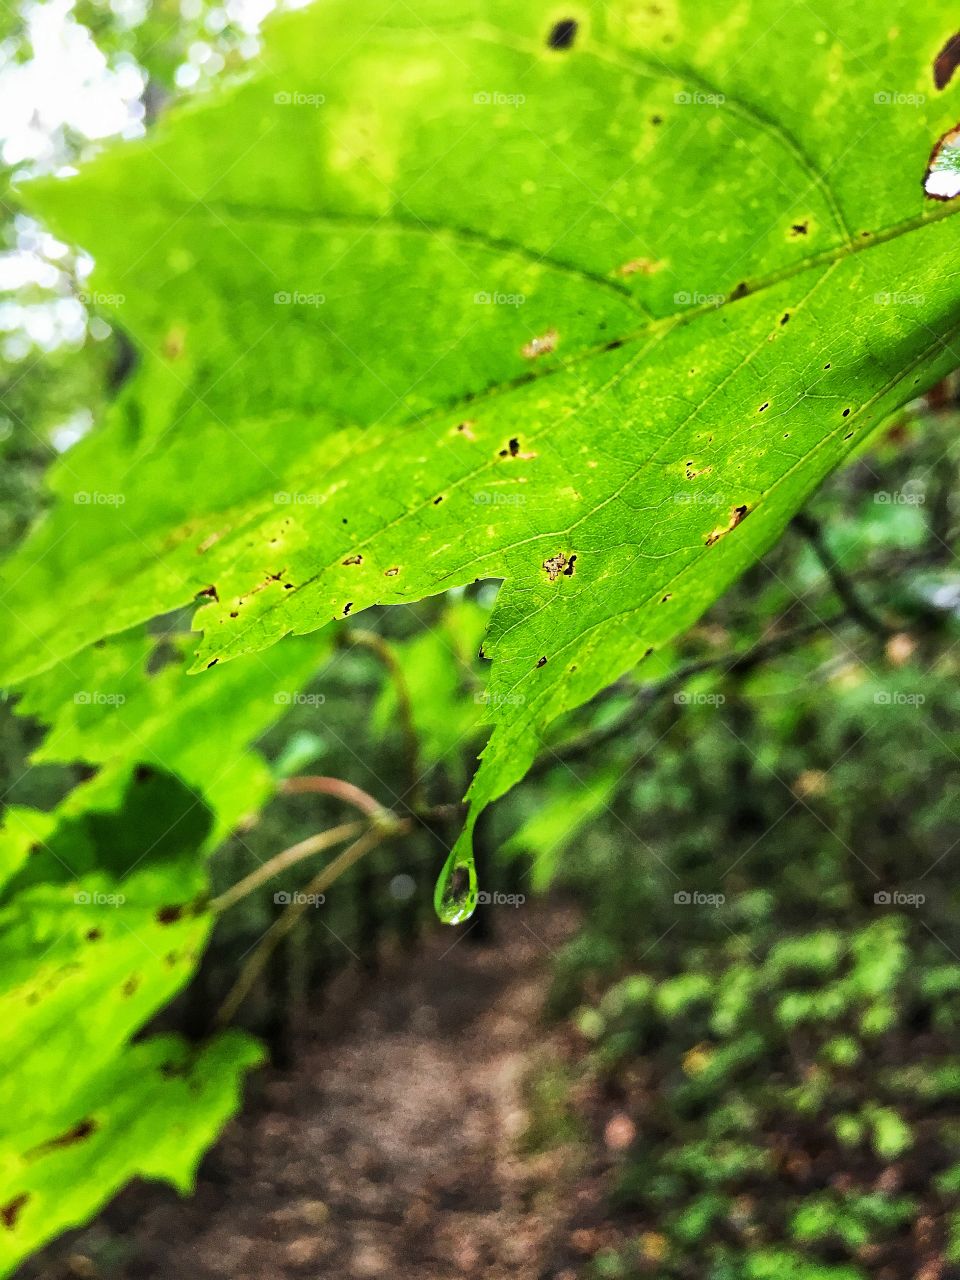 Rain drops on a leaf 